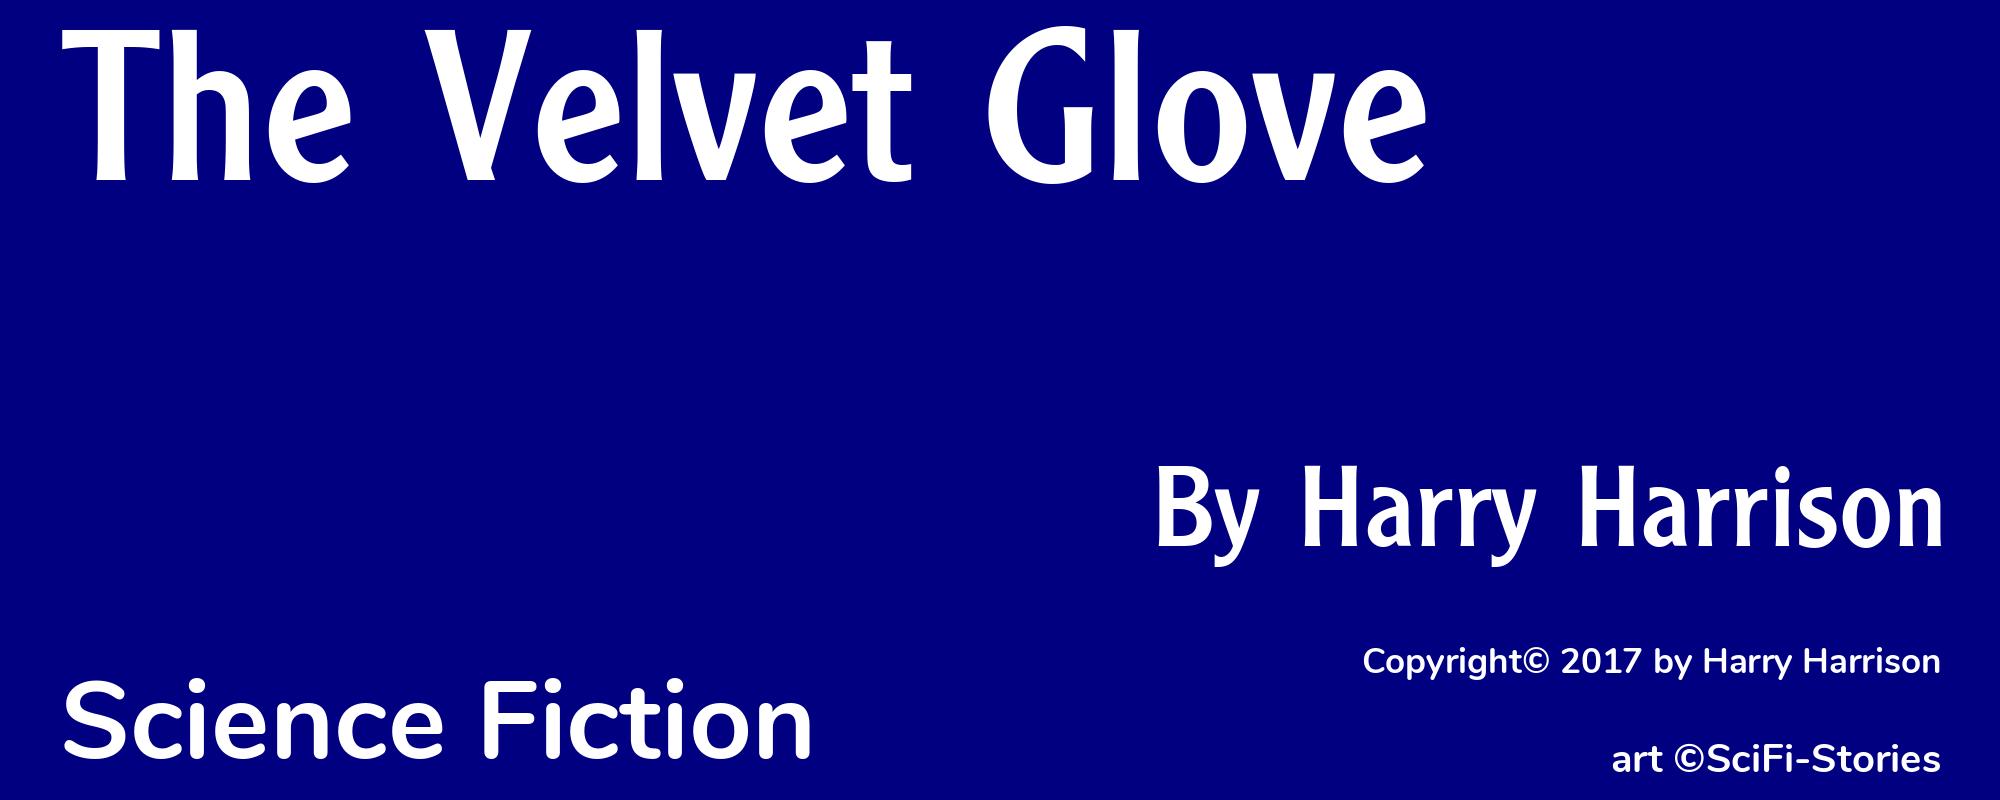 The Velvet Glove - Cover